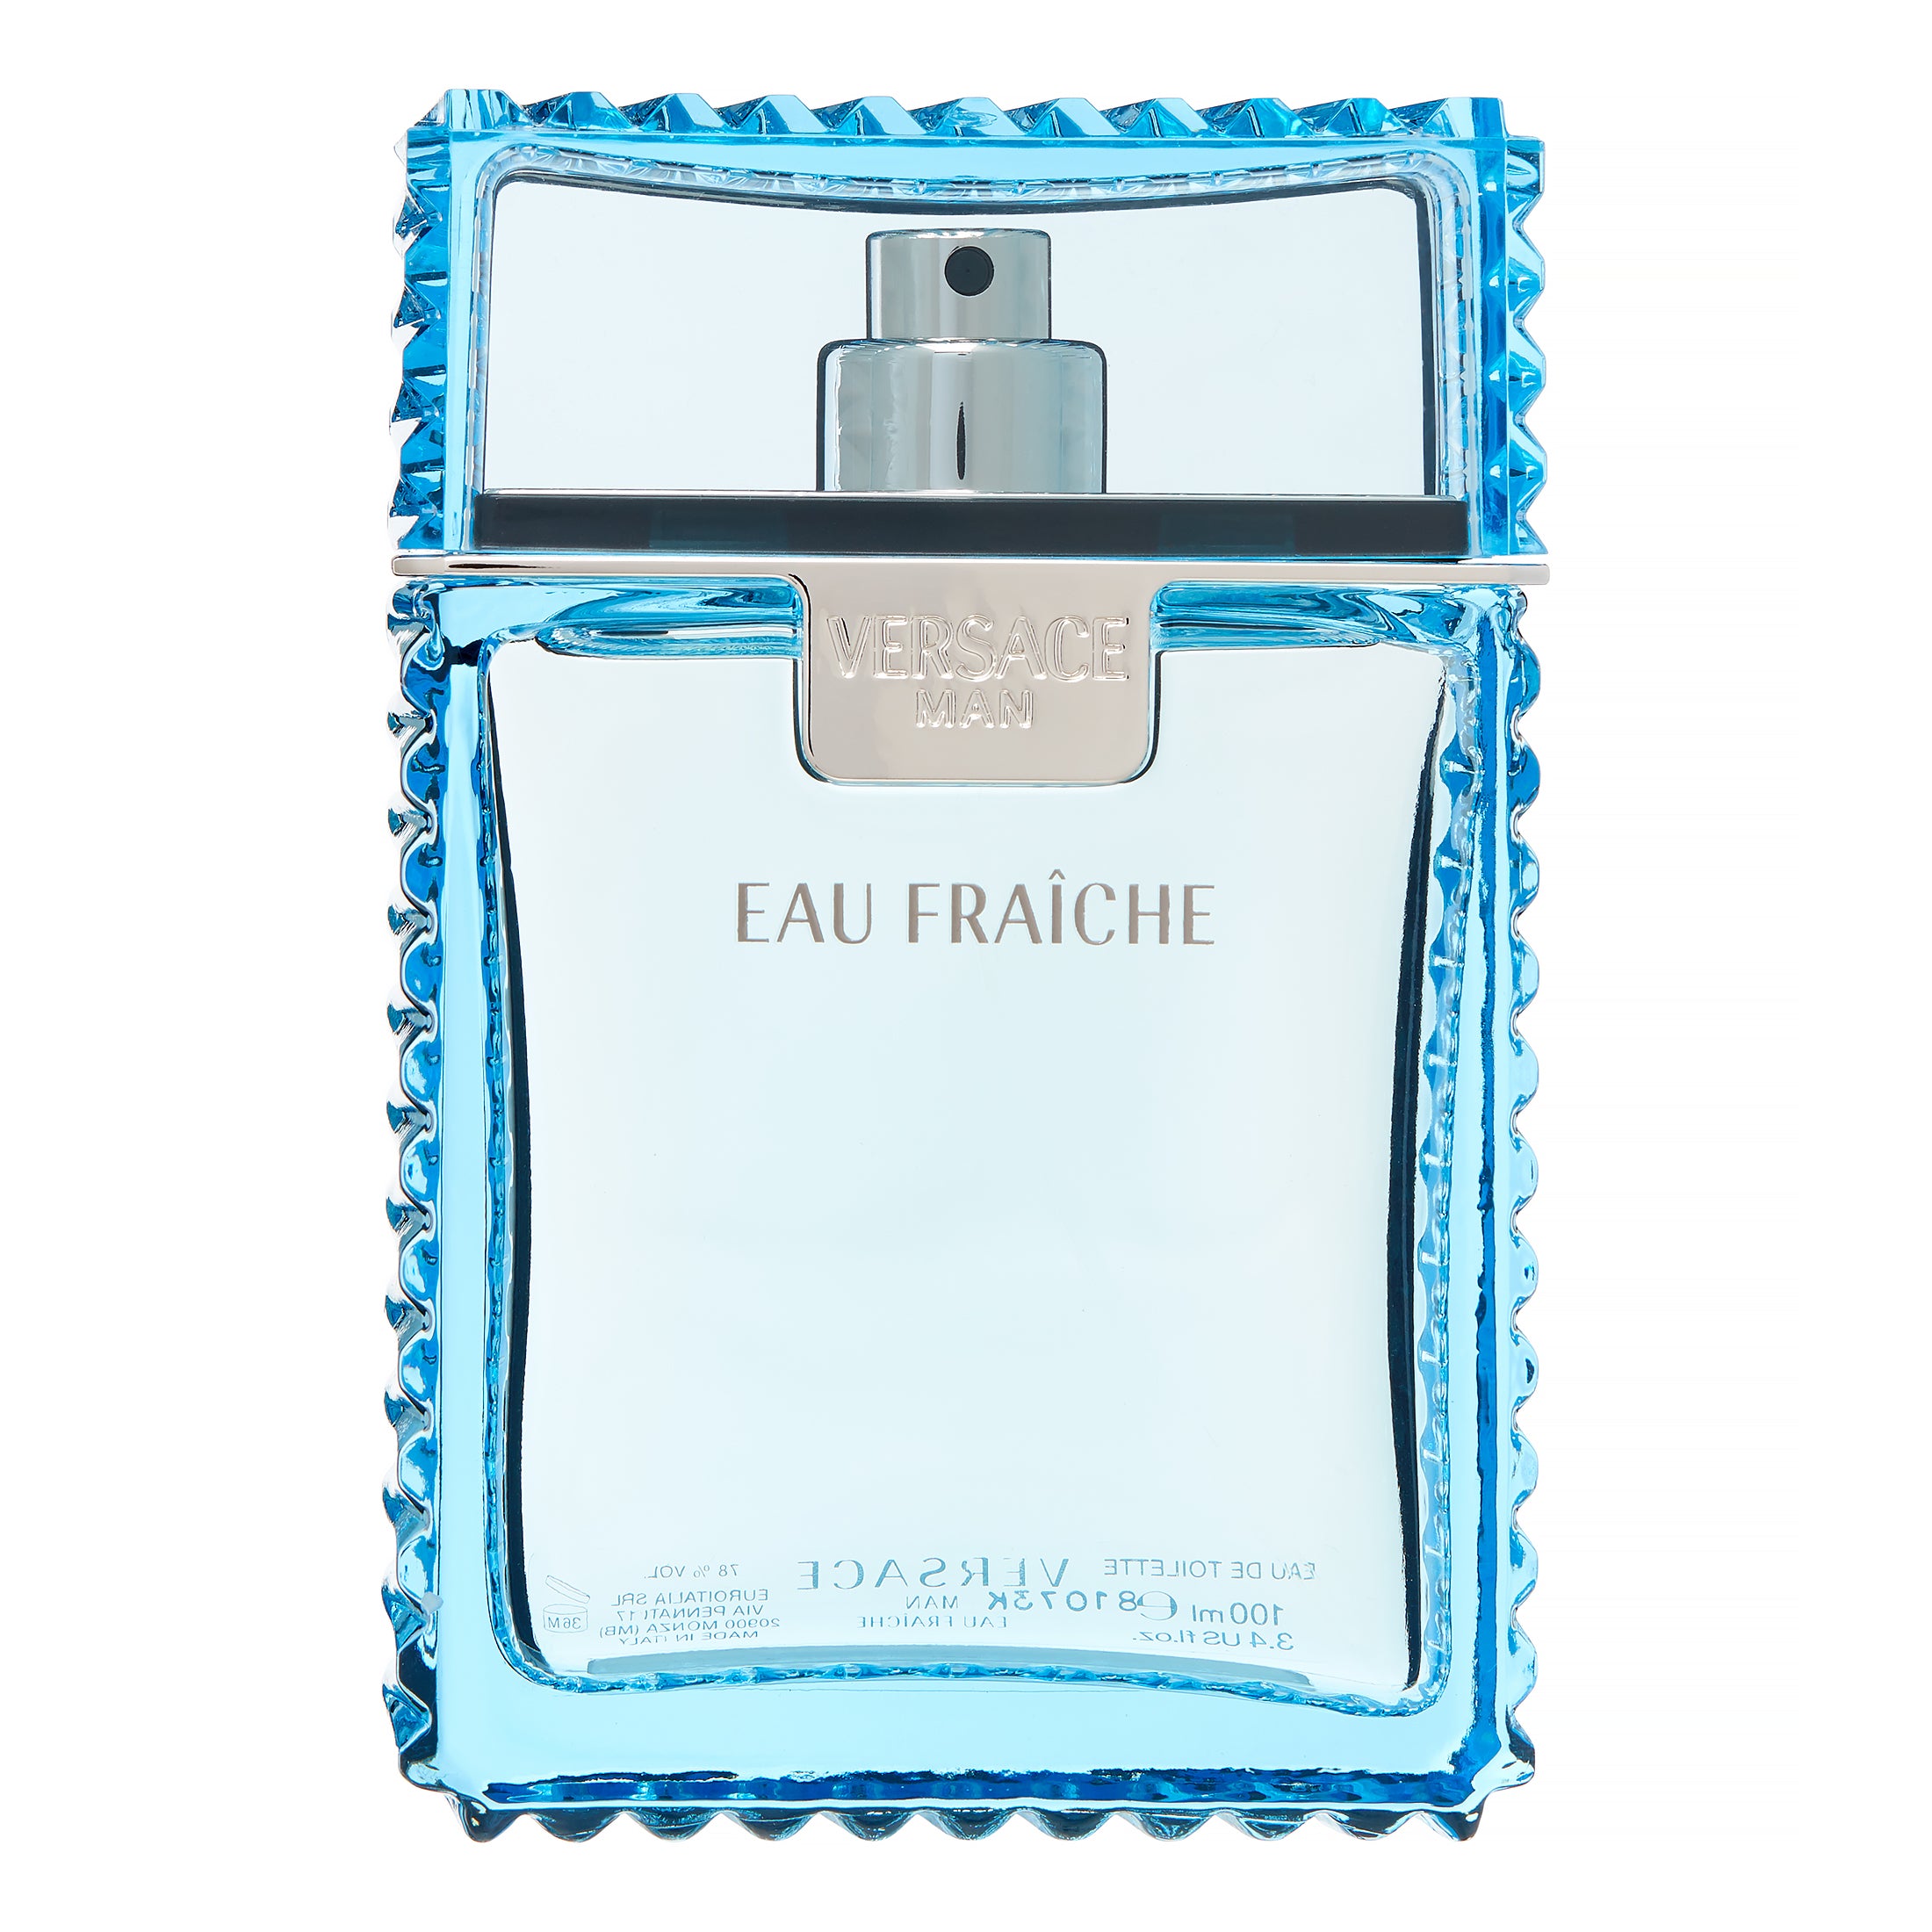 Colognes similar to Versace Man Eau Fraiche – Perfume Nez